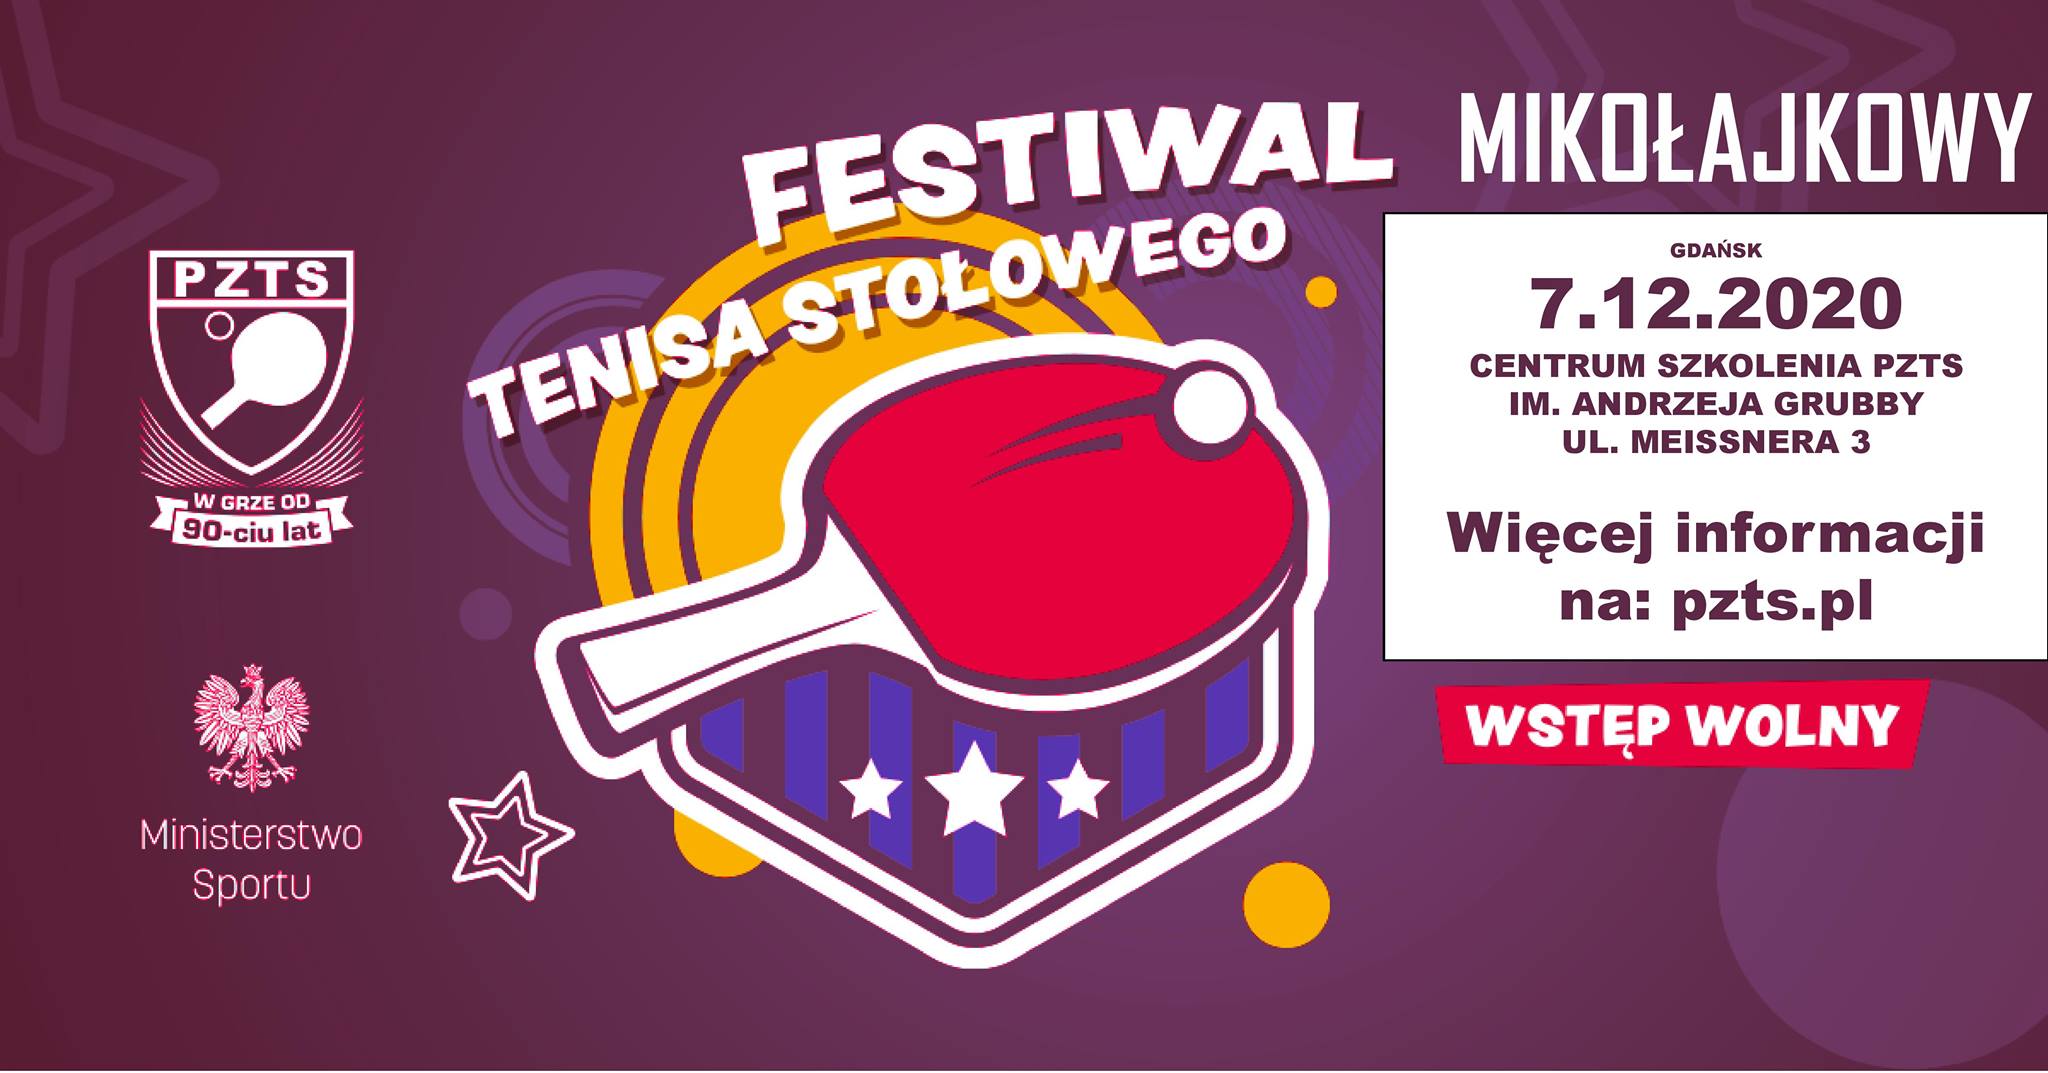 Plakat turnieju "MIKOŁAJKOWY" Festiwal Tenisa Stołowego 2020